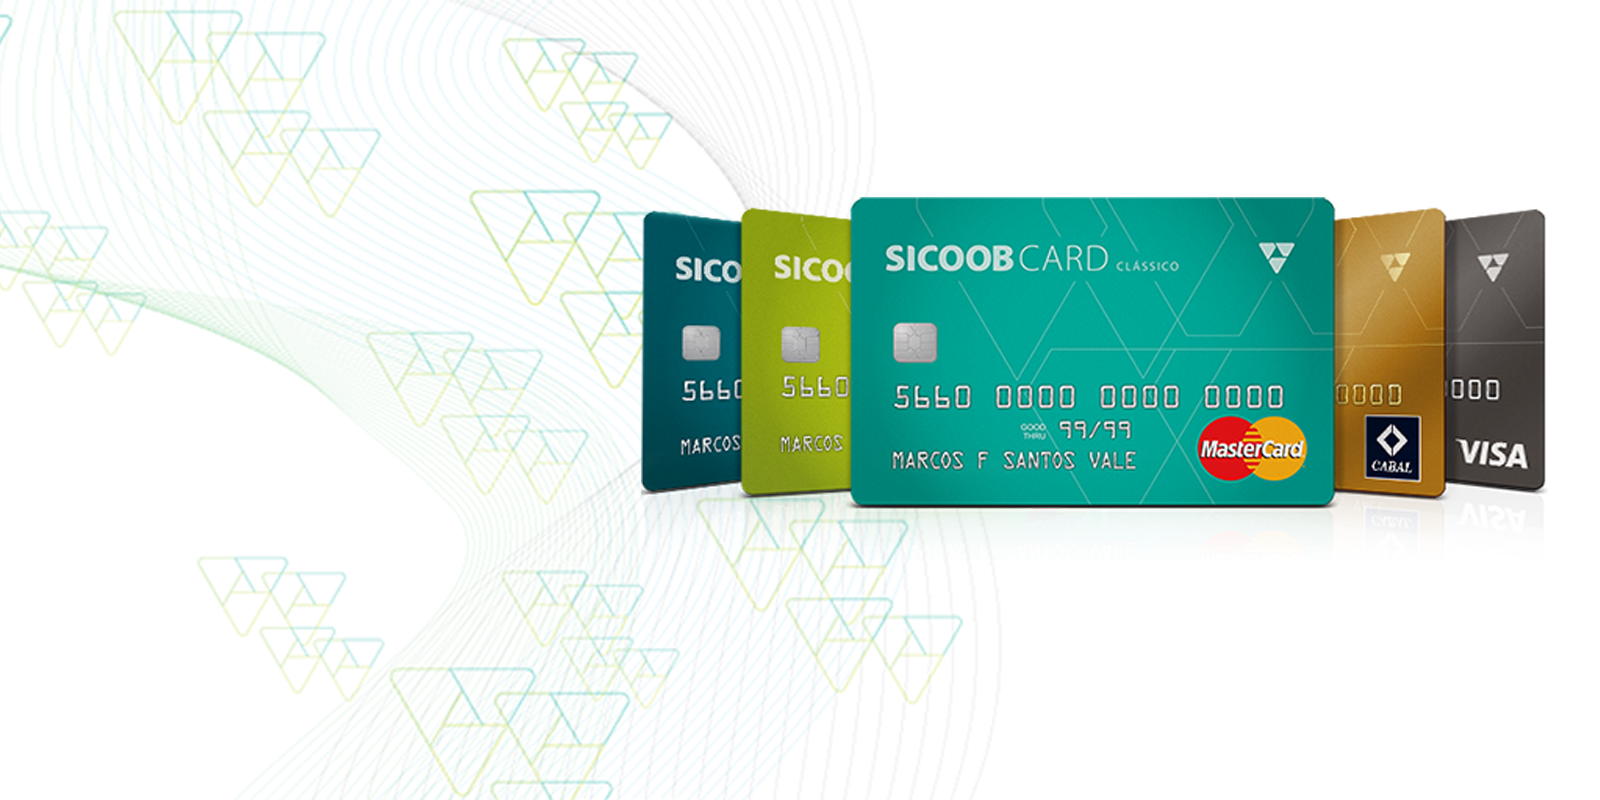 O Sicoob Mastercard é aceito em milhões de estabelecimentos em todo o mundo